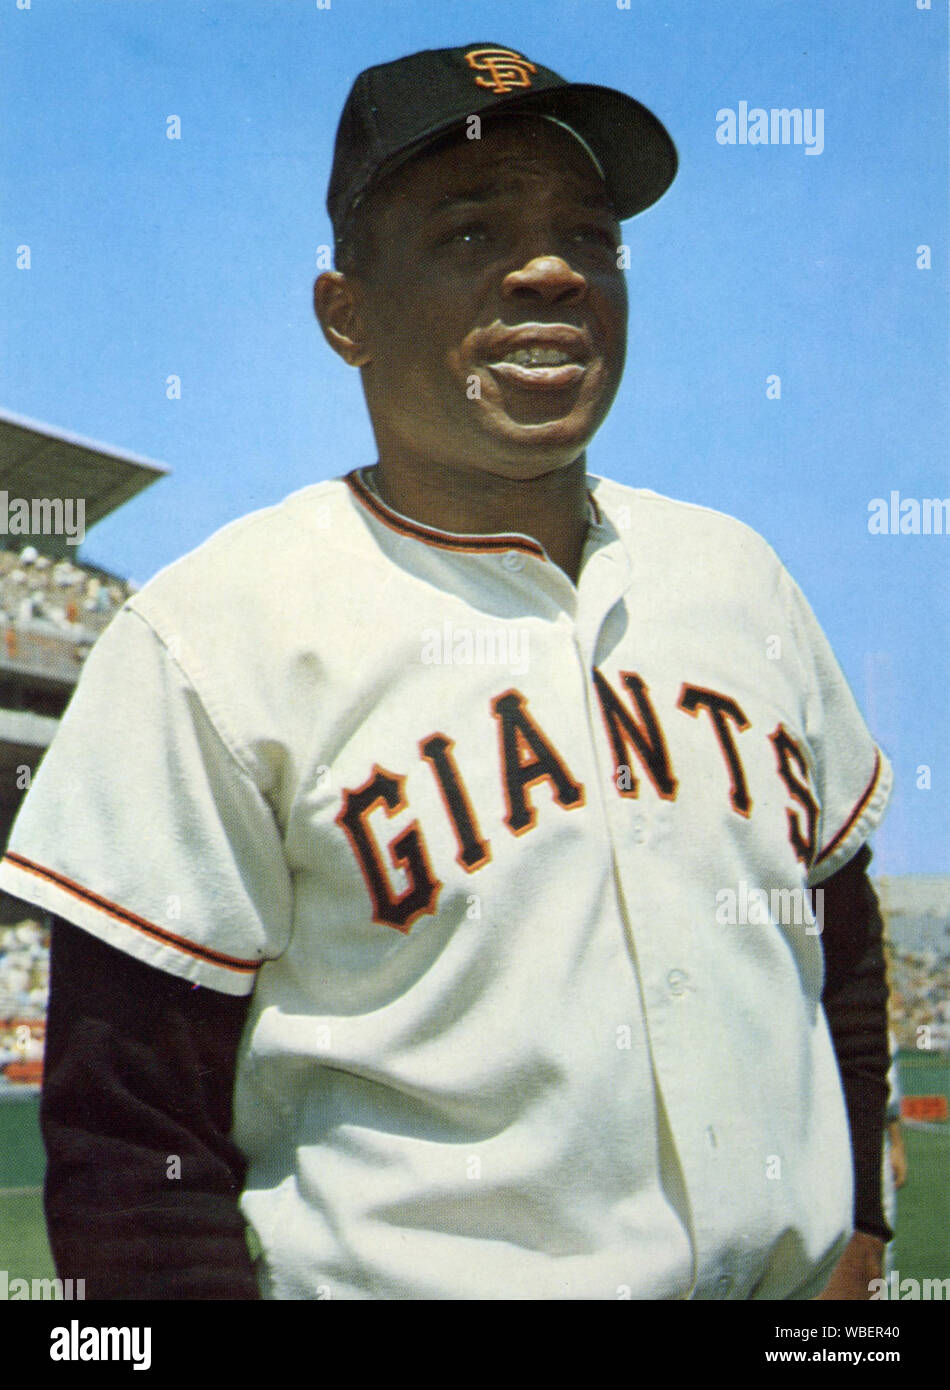 Hall of Fame Baseball player Willie Mays war eine Afrikanische amerikanische Athlet, der mit dem New York und San Francisco Giants in den grossen Ligen in den 1950er und 1960er Jahren. Stockfoto